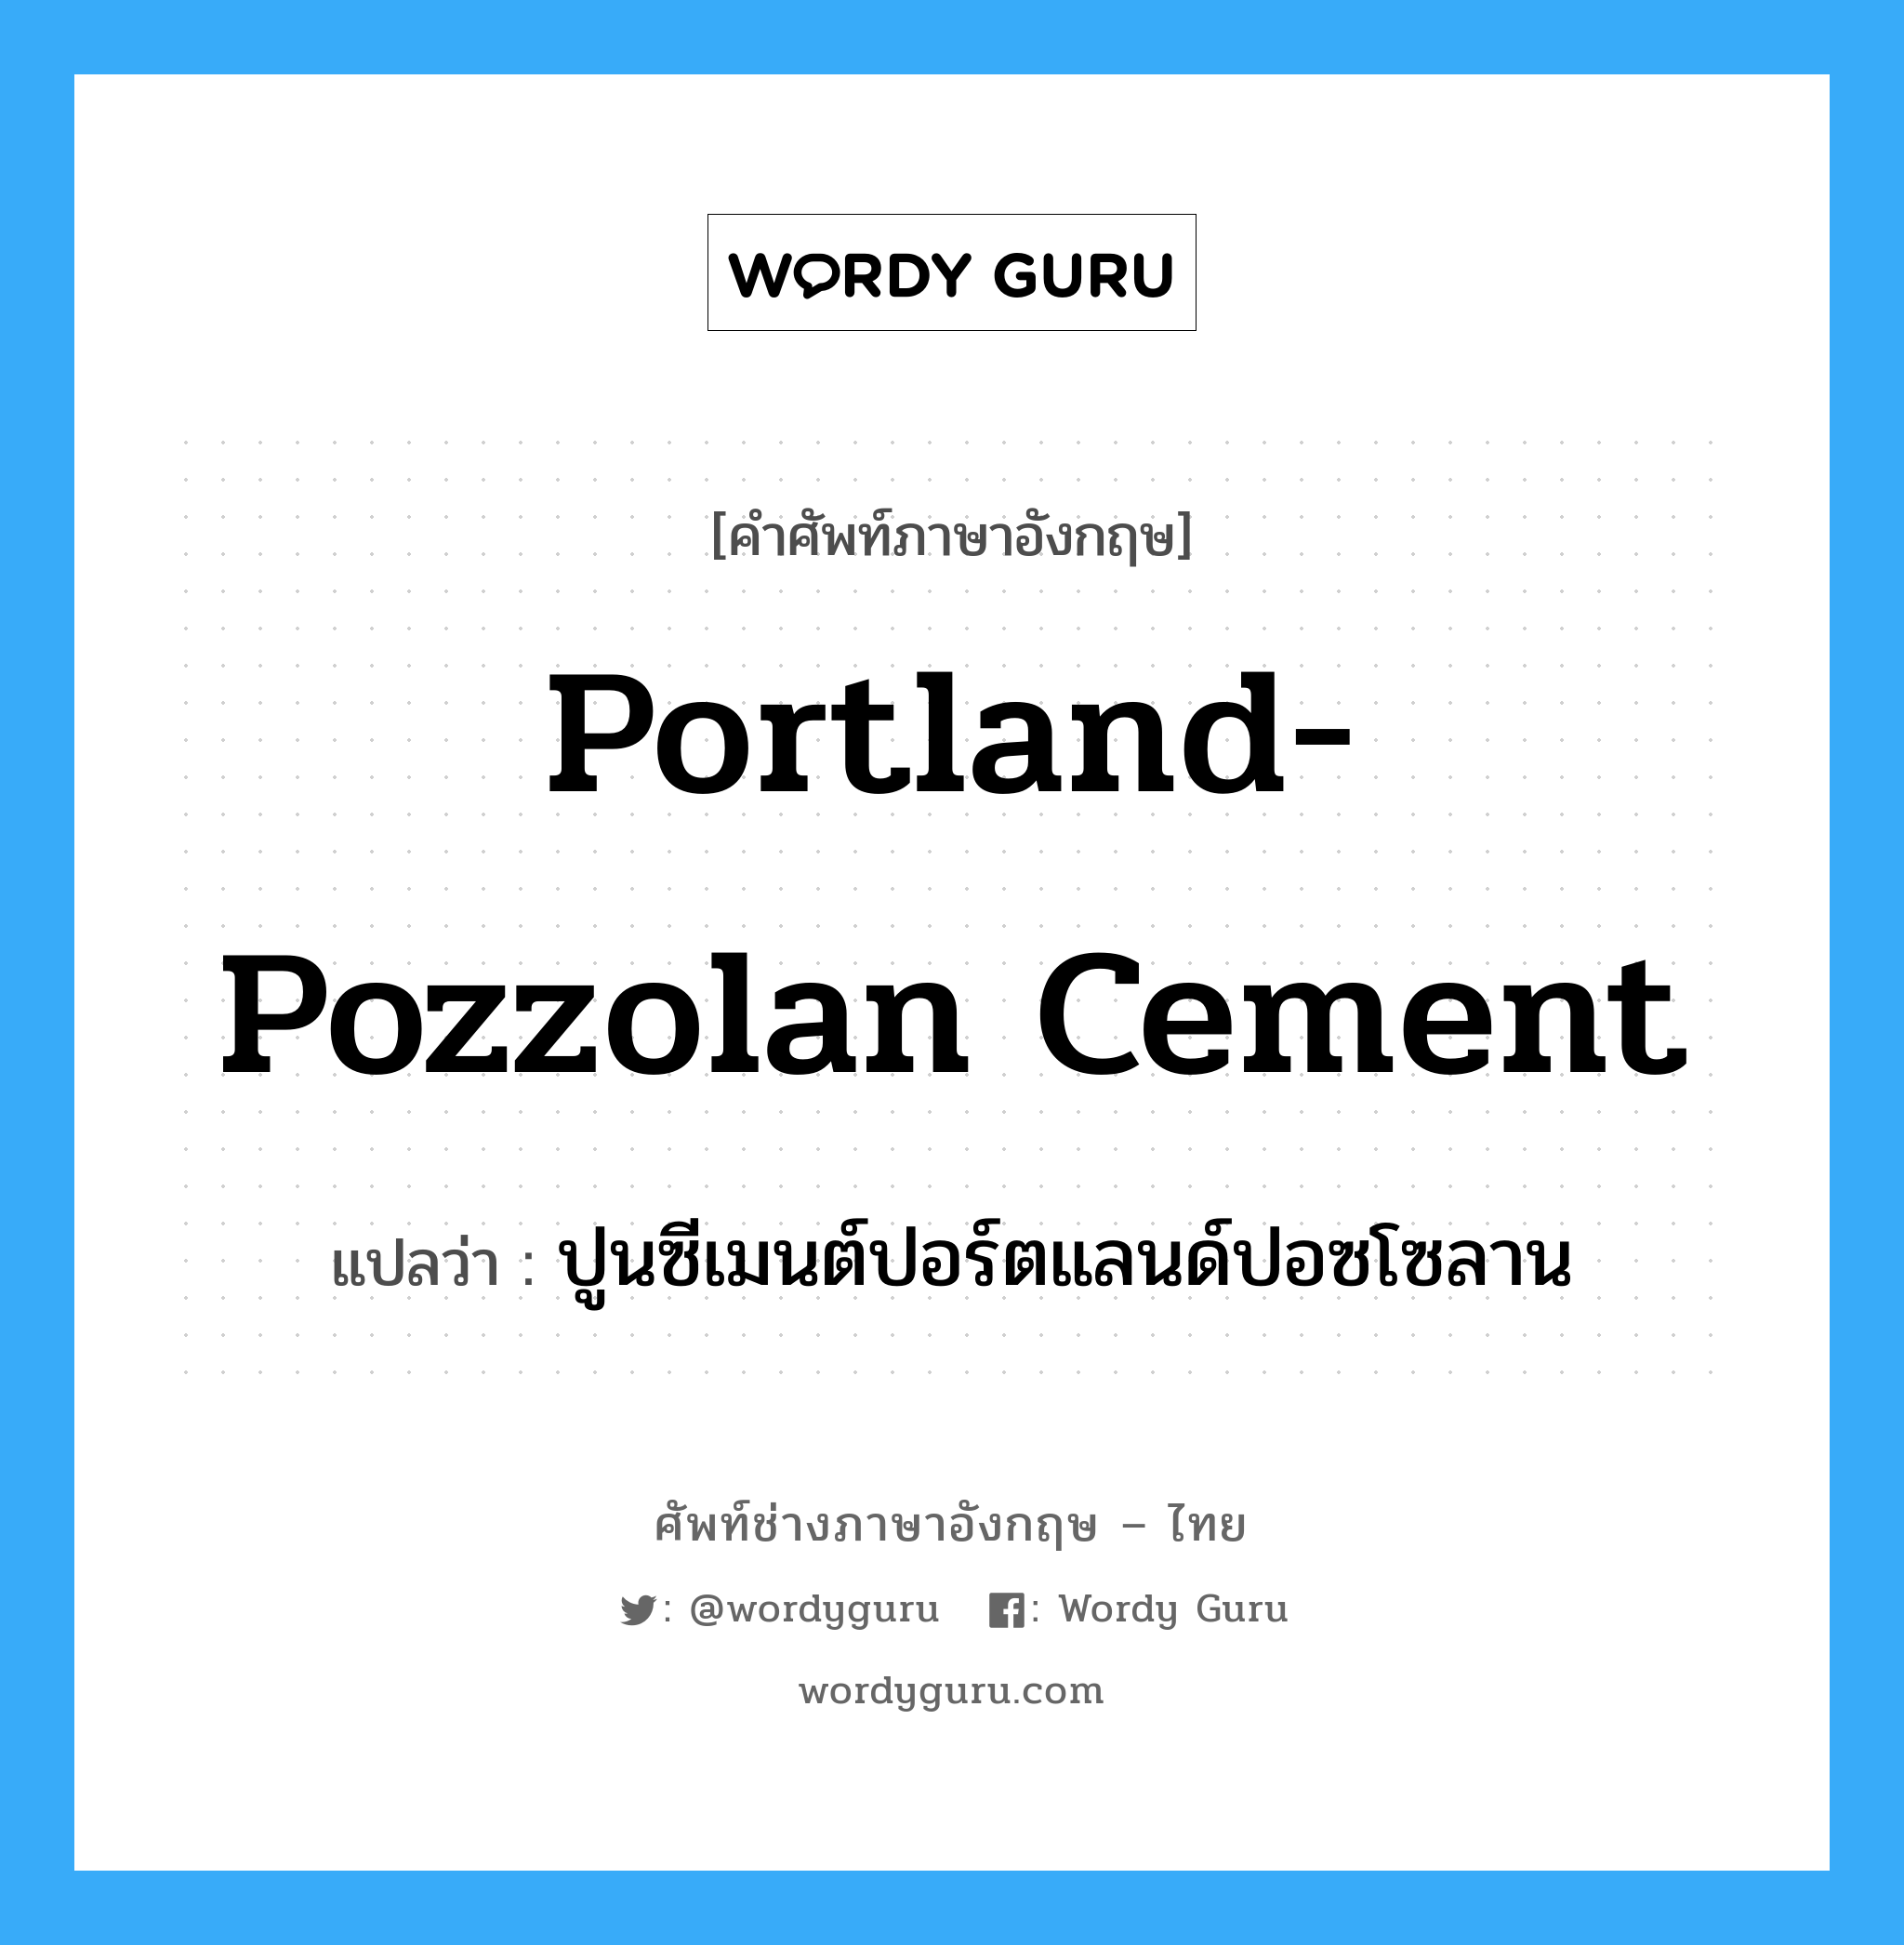 portland-pozzolan cement แปลว่า?, คำศัพท์ช่างภาษาอังกฤษ - ไทย portland-pozzolan cement คำศัพท์ภาษาอังกฤษ portland-pozzolan cement แปลว่า ปูนซีเมนต์ปอร์ตแลนด์ปอซโซลาน